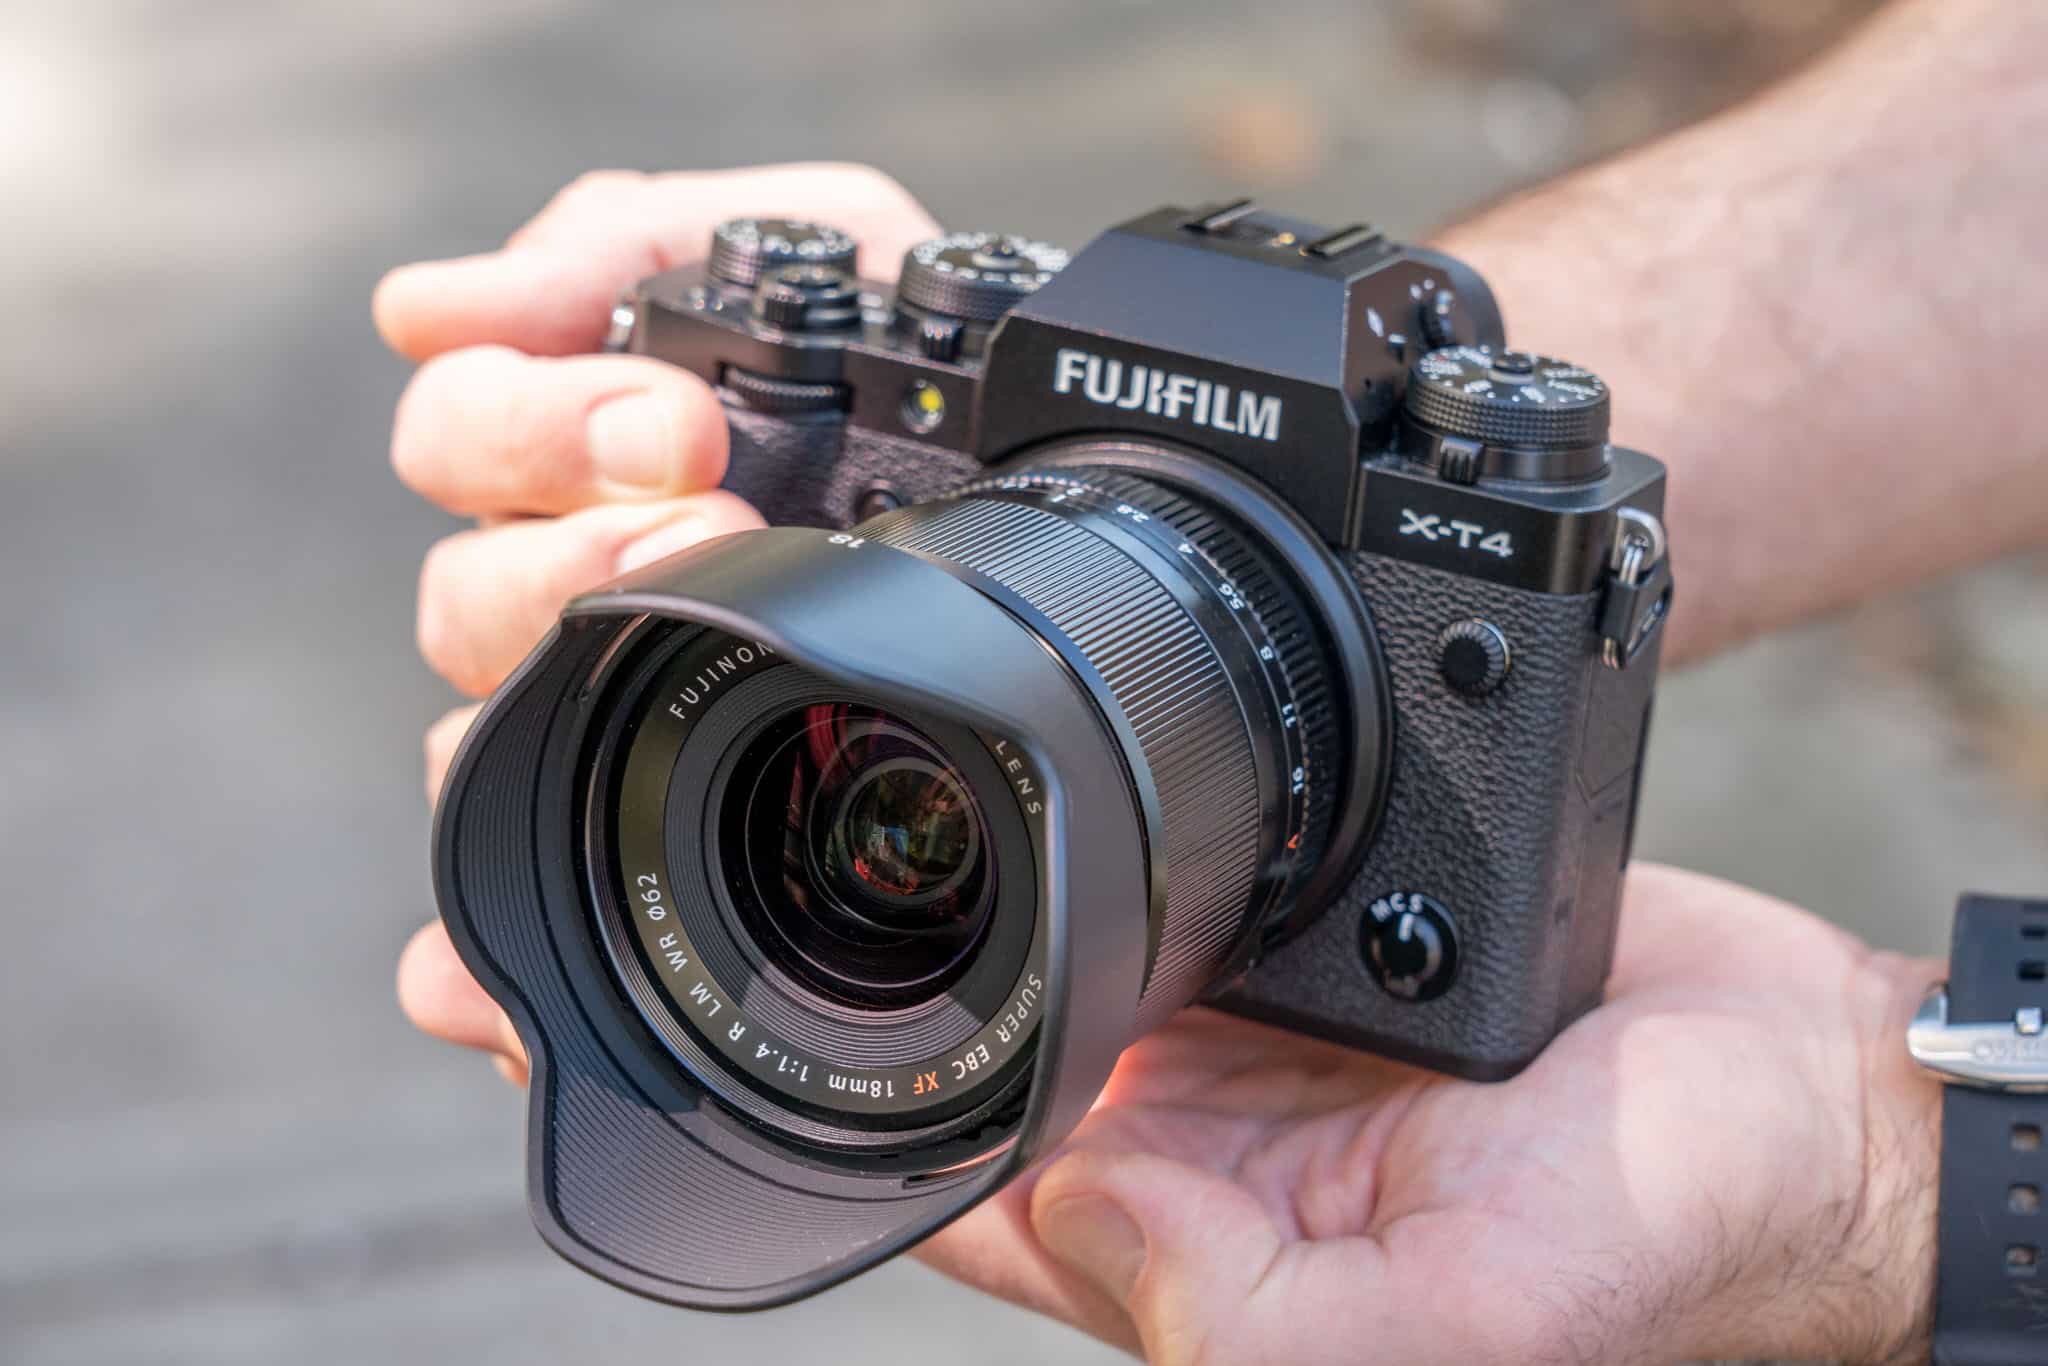 Đánh giá ống kính Fujifilm XF 18mm F1.4 R LM WR từ ePHOTOzine: "Độ sắc nét vượt trội, sử dụng rất thú vị"